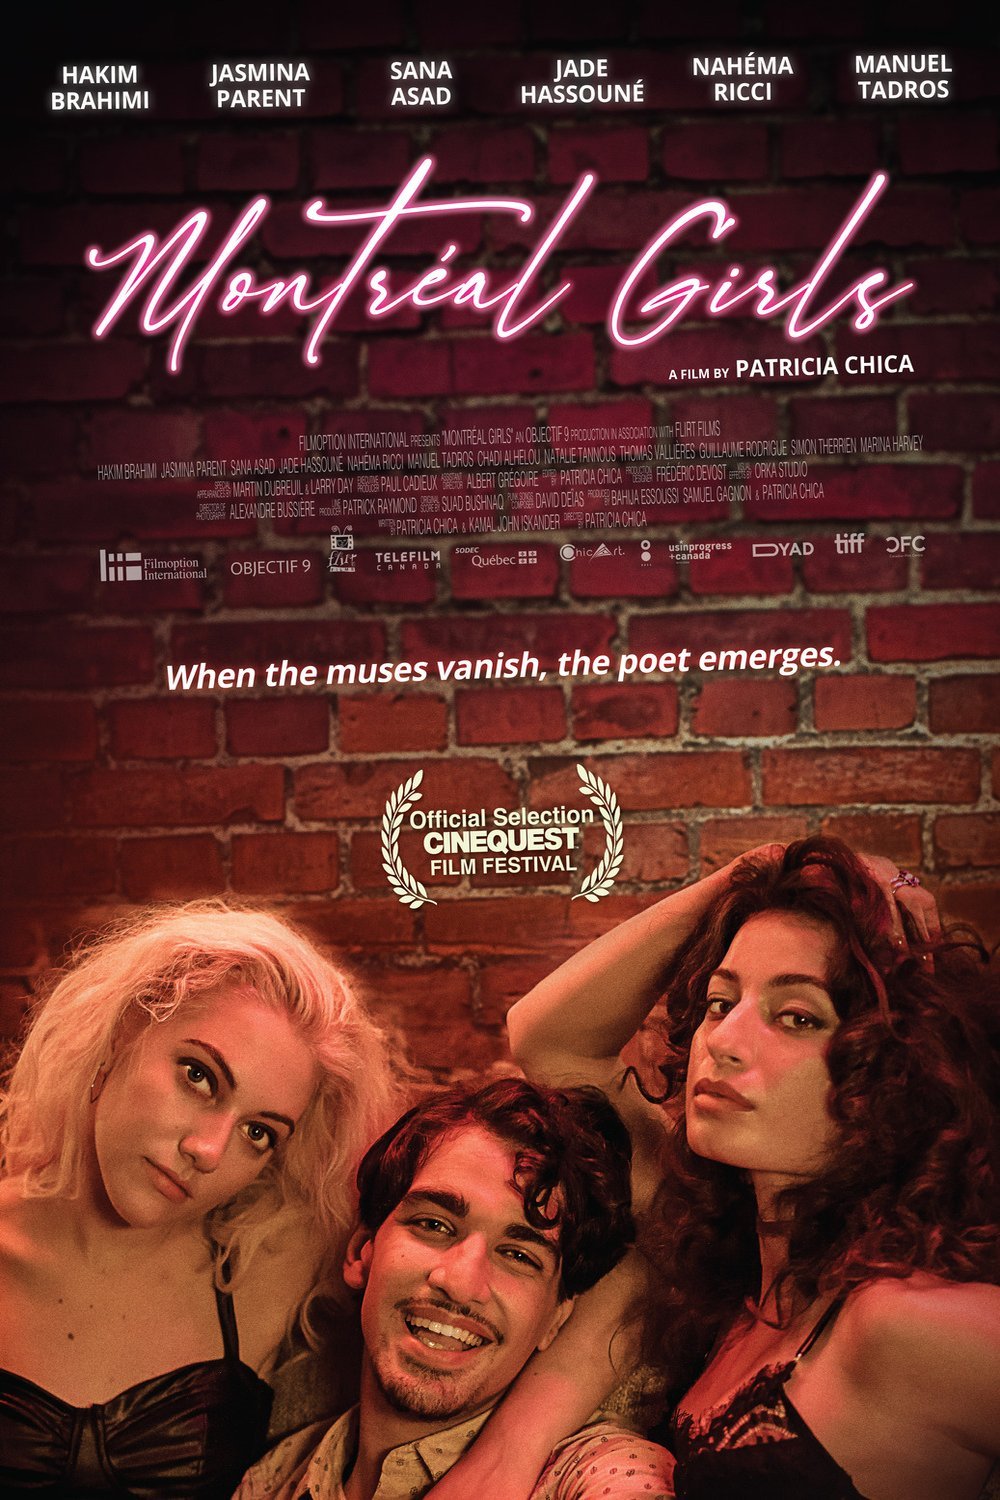 L'affiche du film Montréal Girls